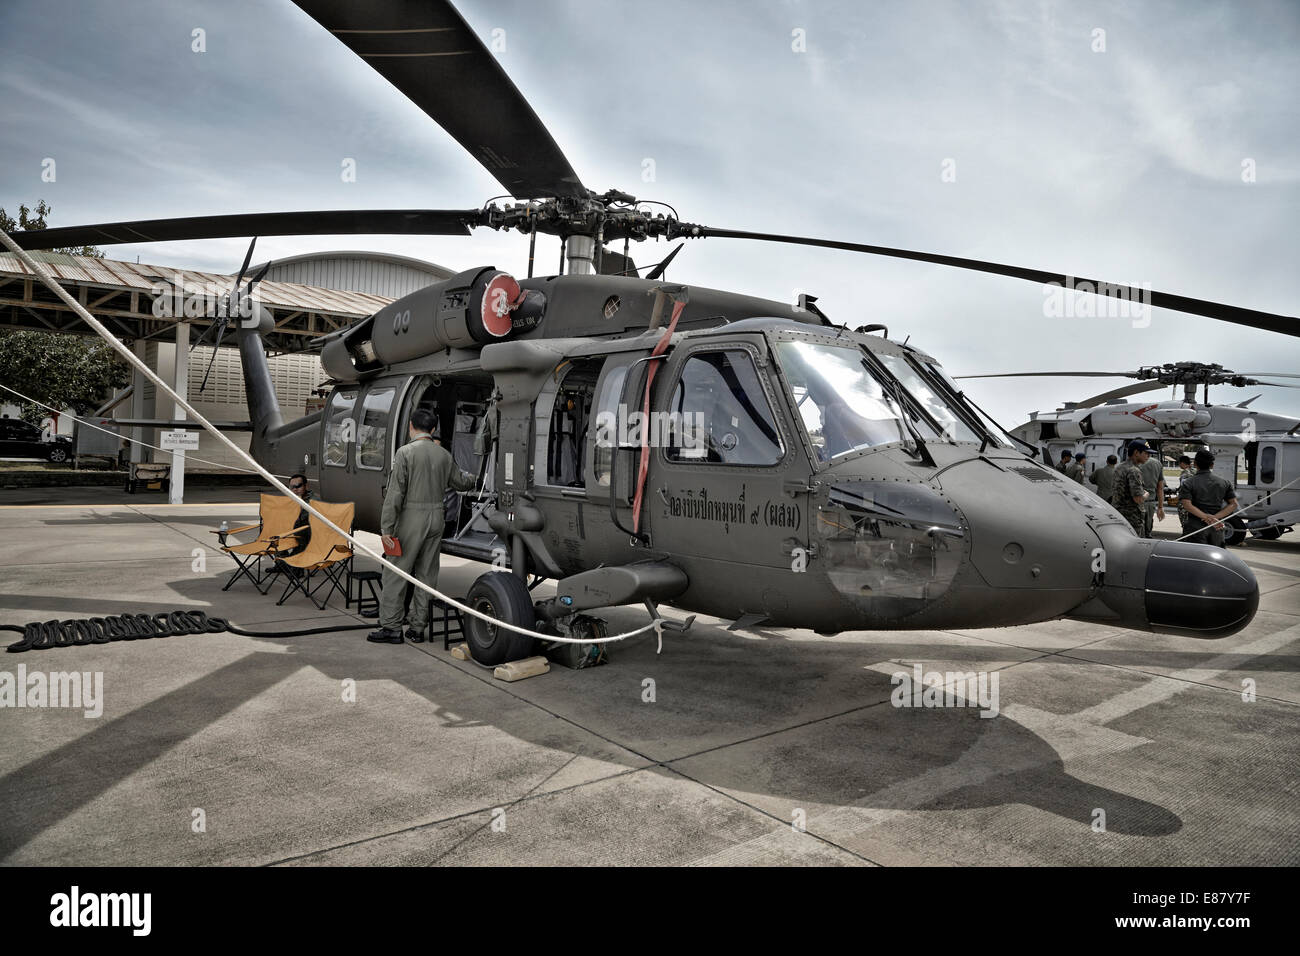 Hélicoptère militaire Sikorsky utilisé par les forces armées thaïlandaises. Thaïlande S. E. Asie. Hélicoptère stationné Banque D'Images